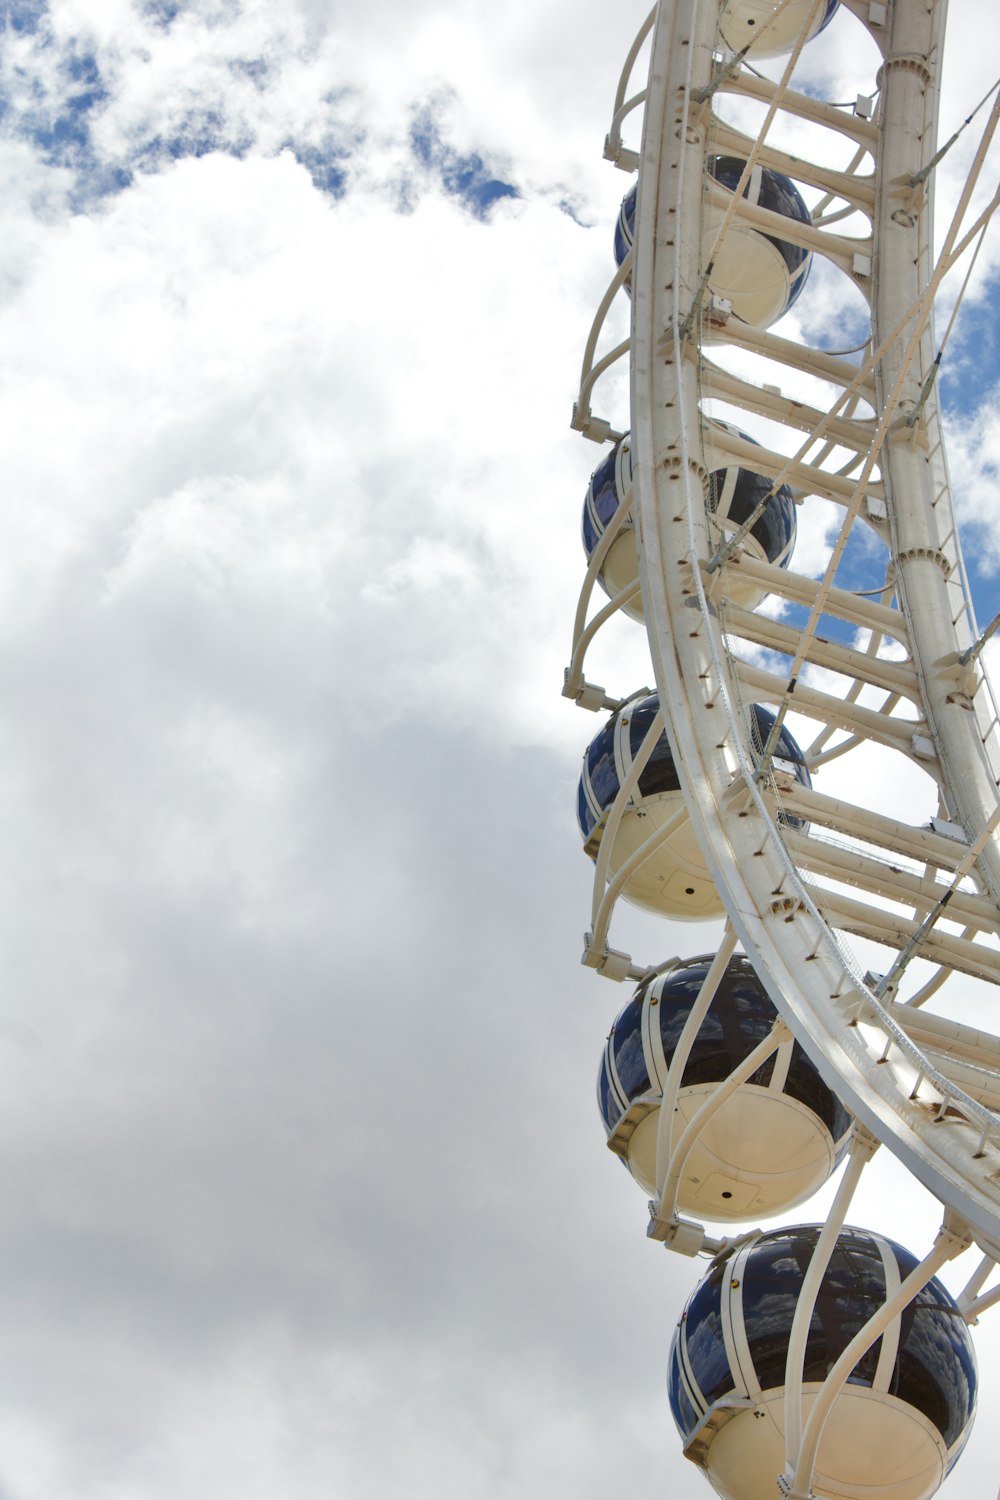 a ferris wheel is shown against a cloudy sky